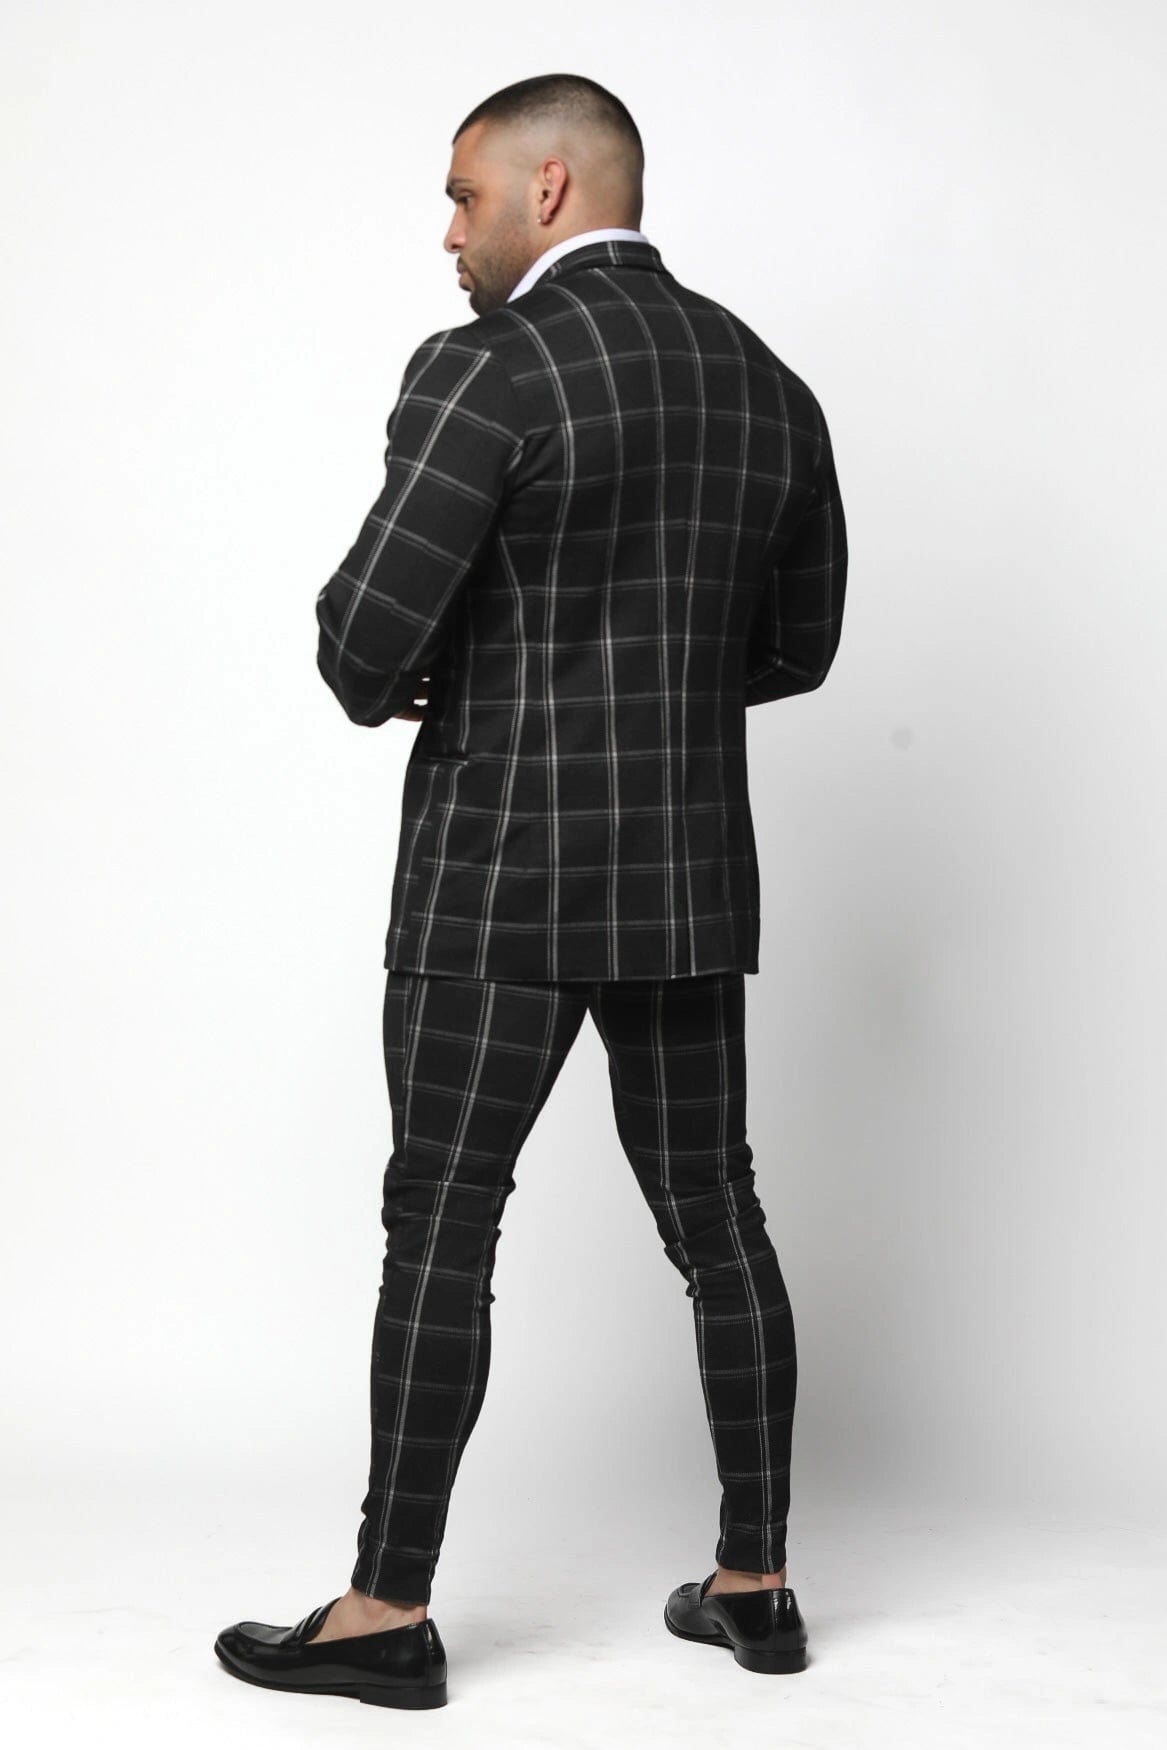 Mens Black Plaid Athletic Fit Suit - Gerardo Collection